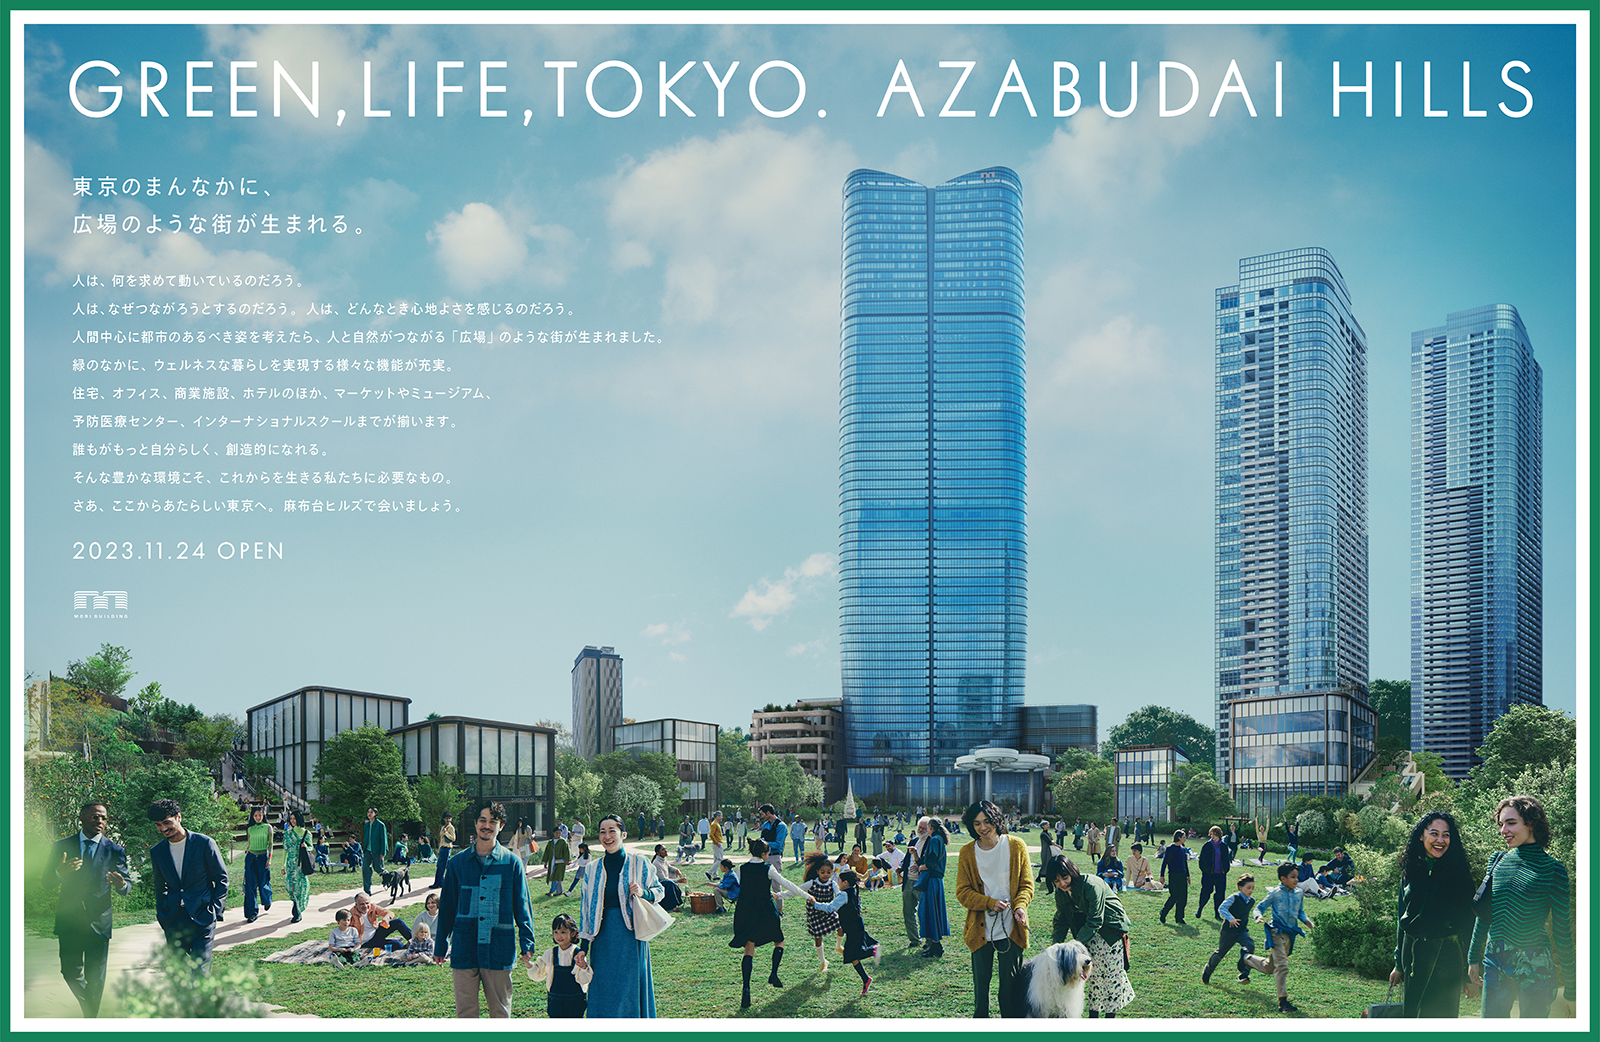 2023年　麻布台ヒルズ開業広告「GREEN, LIFE, TOKYO. AZABUDAI HILLS」